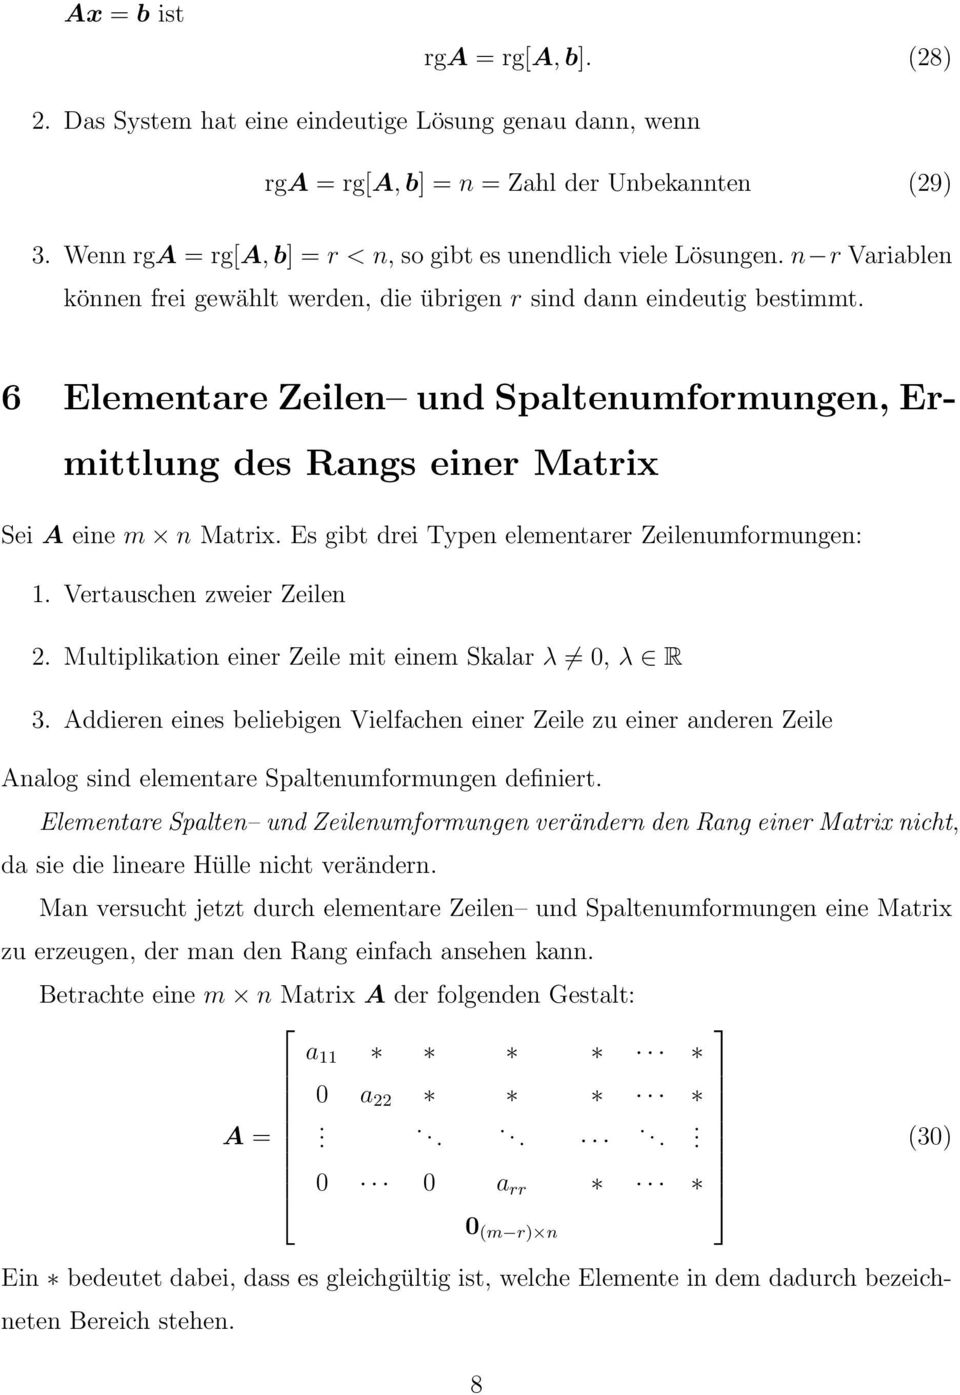 gibt drei Typen elementarer Zeilenumformungen: 1 Vertauschen zweier Zeilen 2 Multiplikation einer Zeile mit einem Skalar λ, λ R 3 Addieren eines beliebigen Vielfachen einer Zeile zu einer anderen